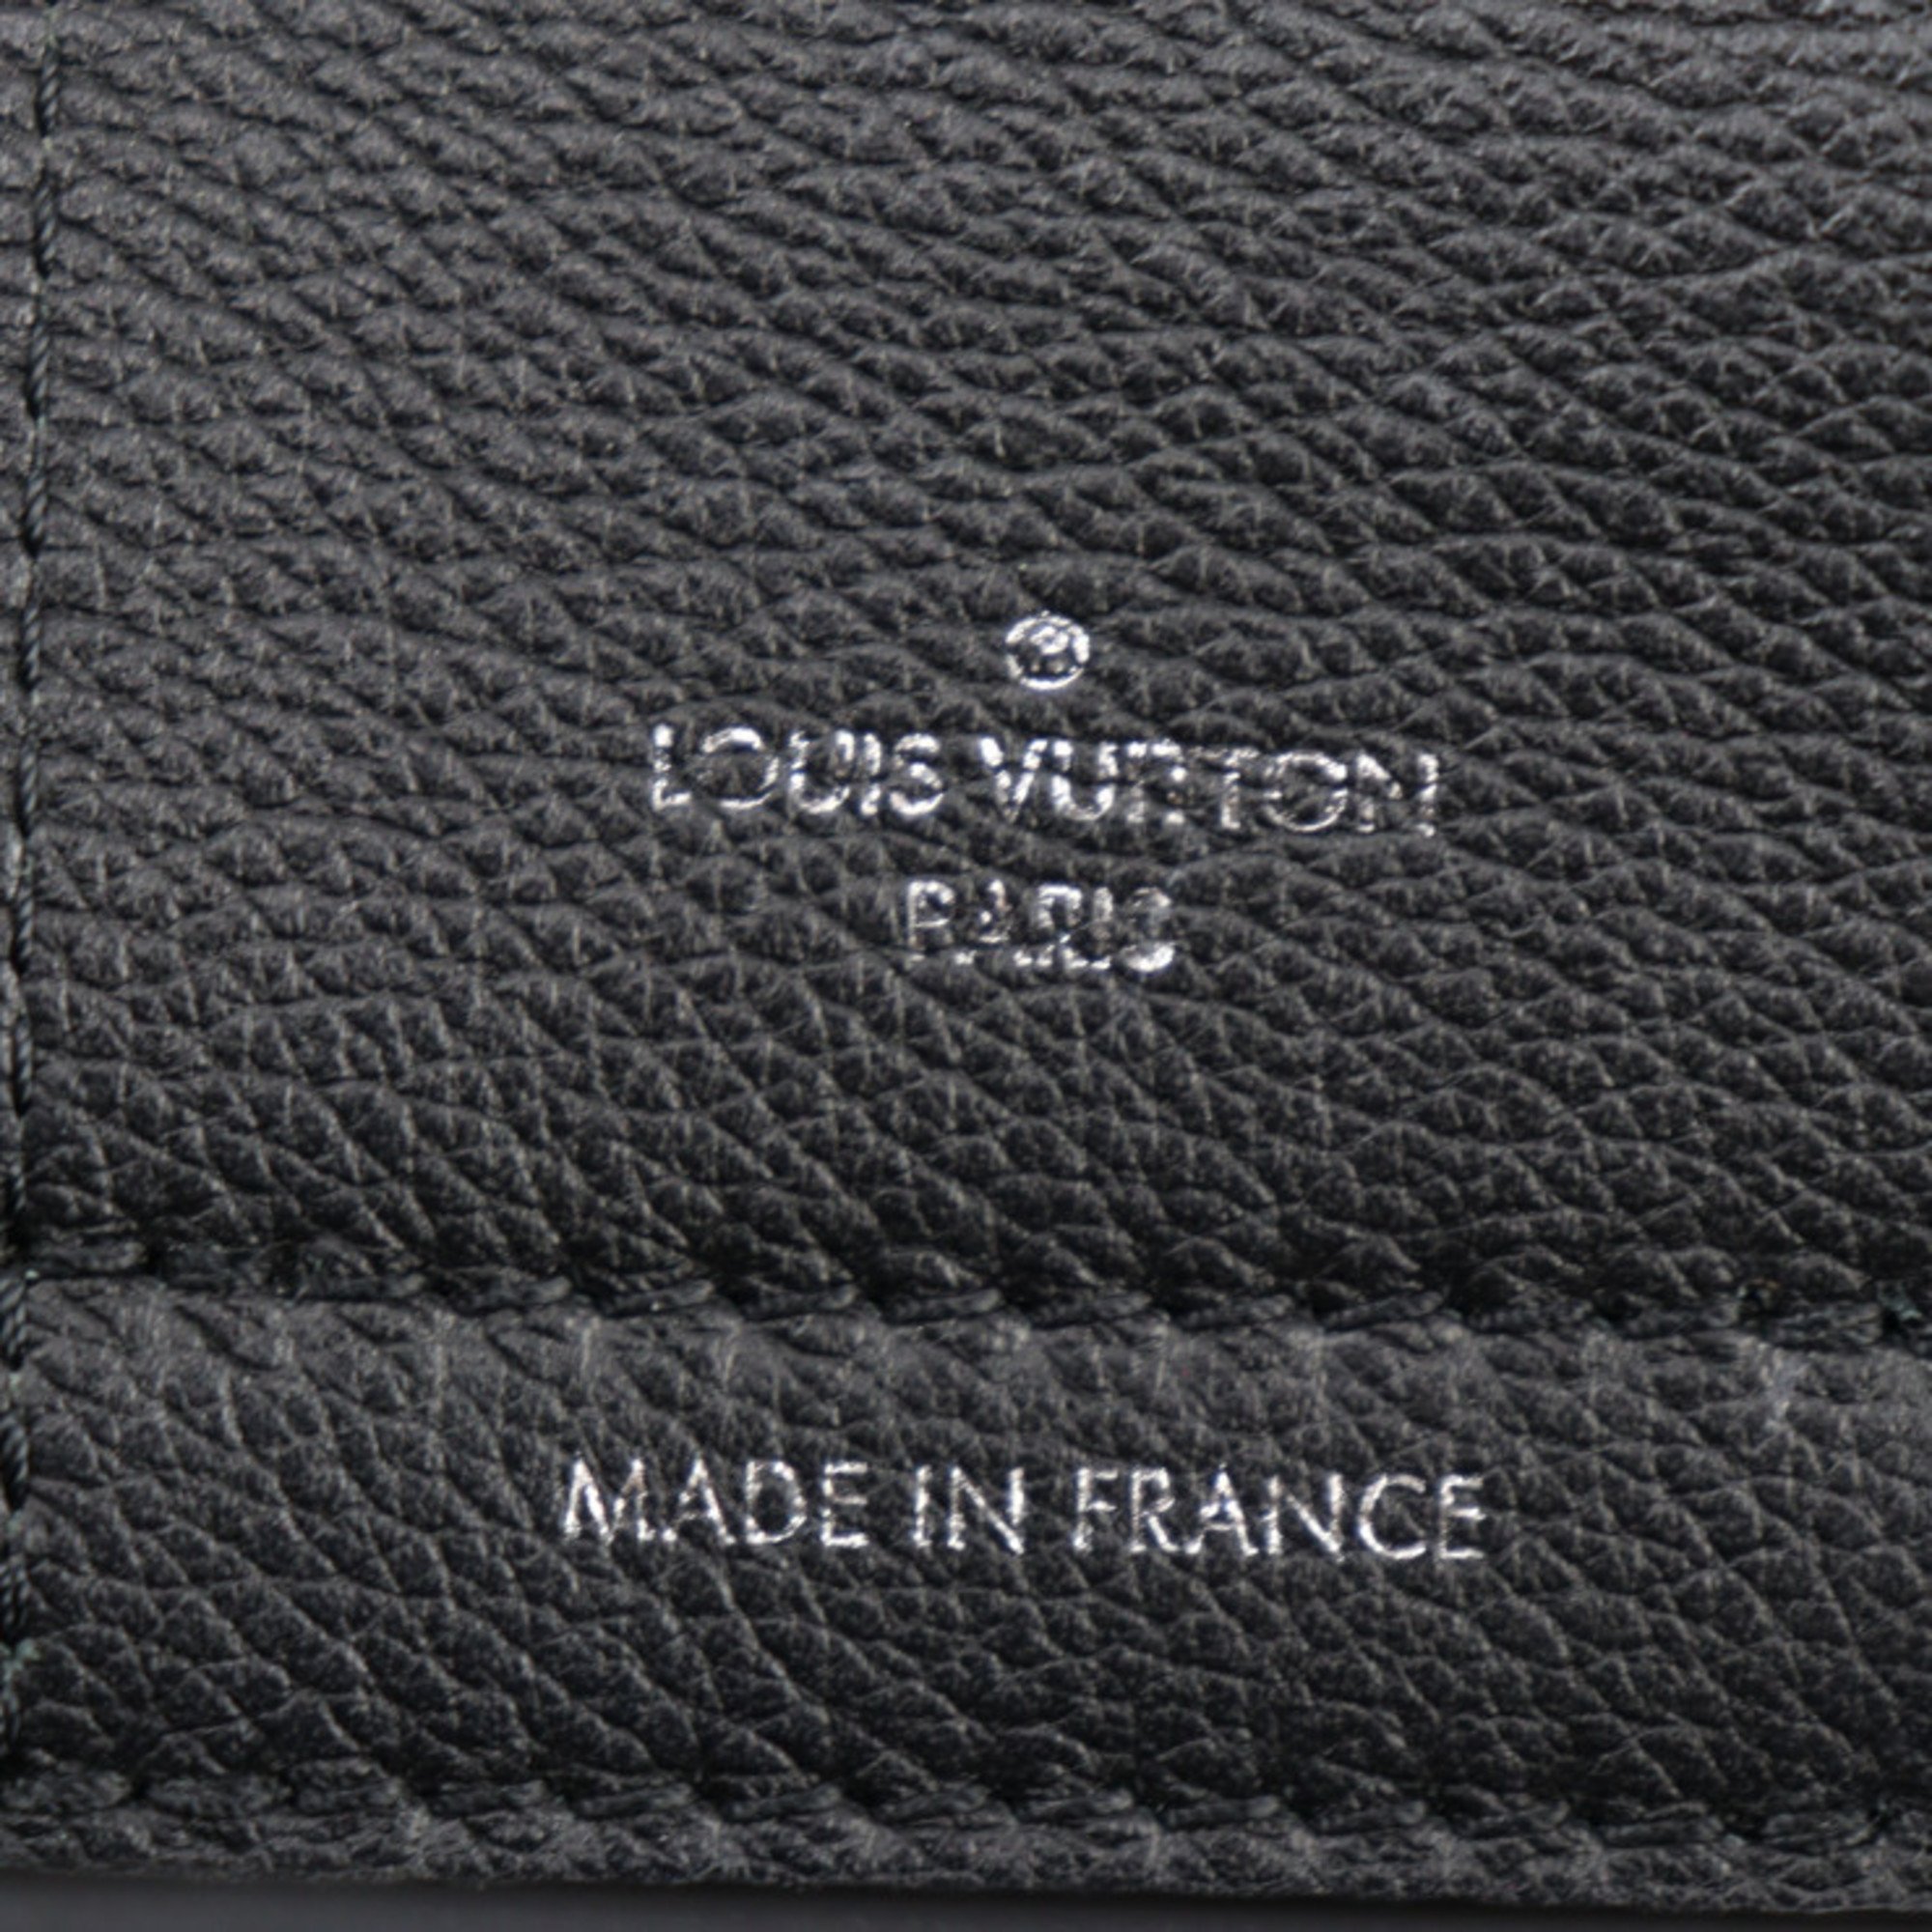 LOUIS VUITTON Rock Me Day Handbag M53730 Grain Calf Leather Black Tote Bag Shoulder Vuitton